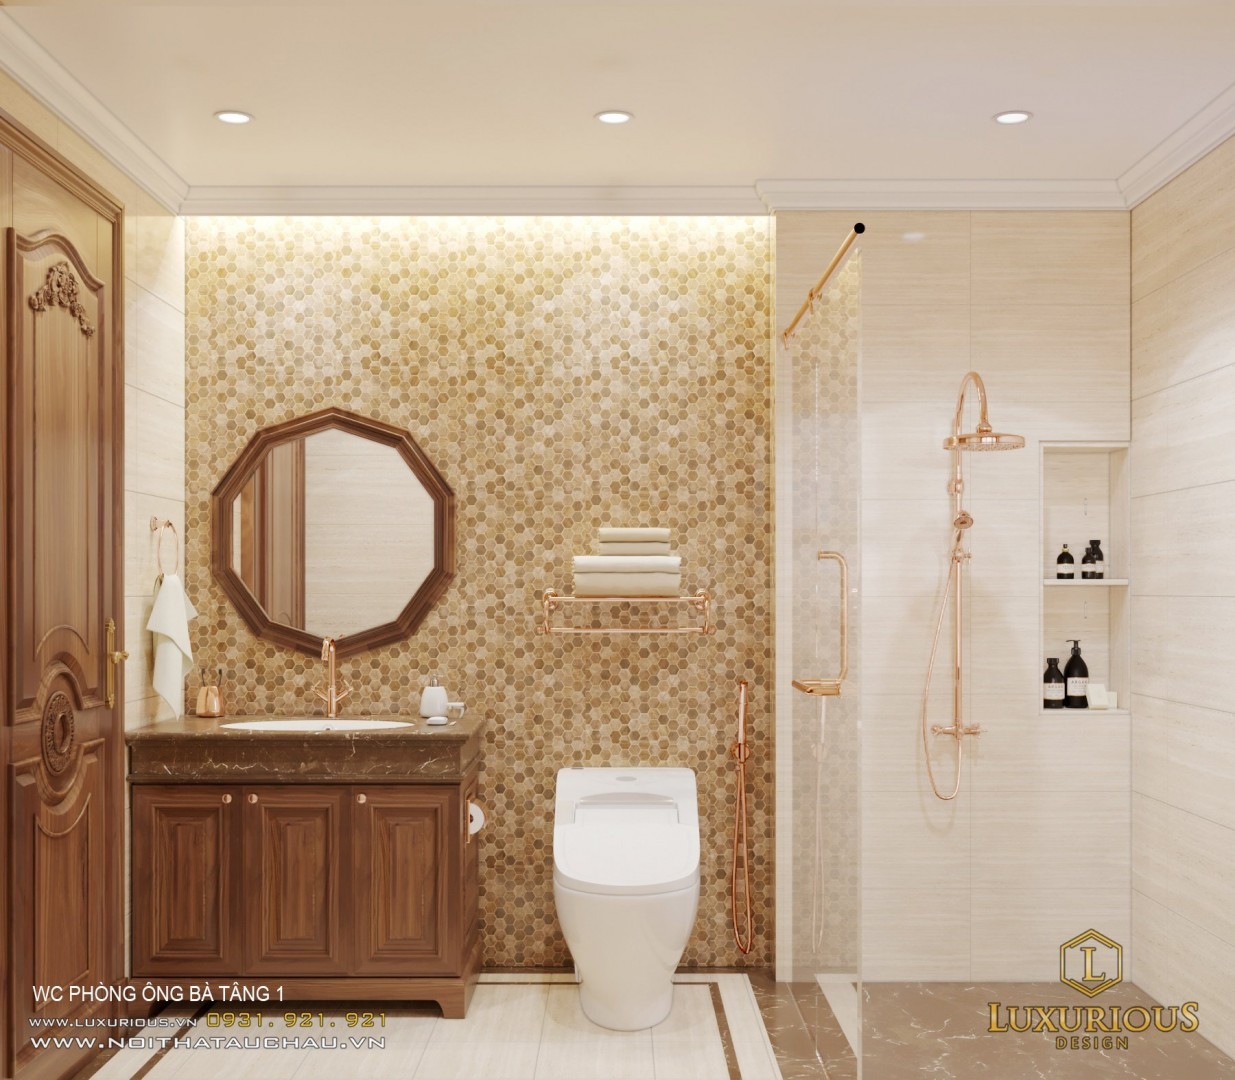 Không gian WC biệt thự 5 tầng sử dụng đá mang phong cách cổ điển phù hợp với thiết kế chung 